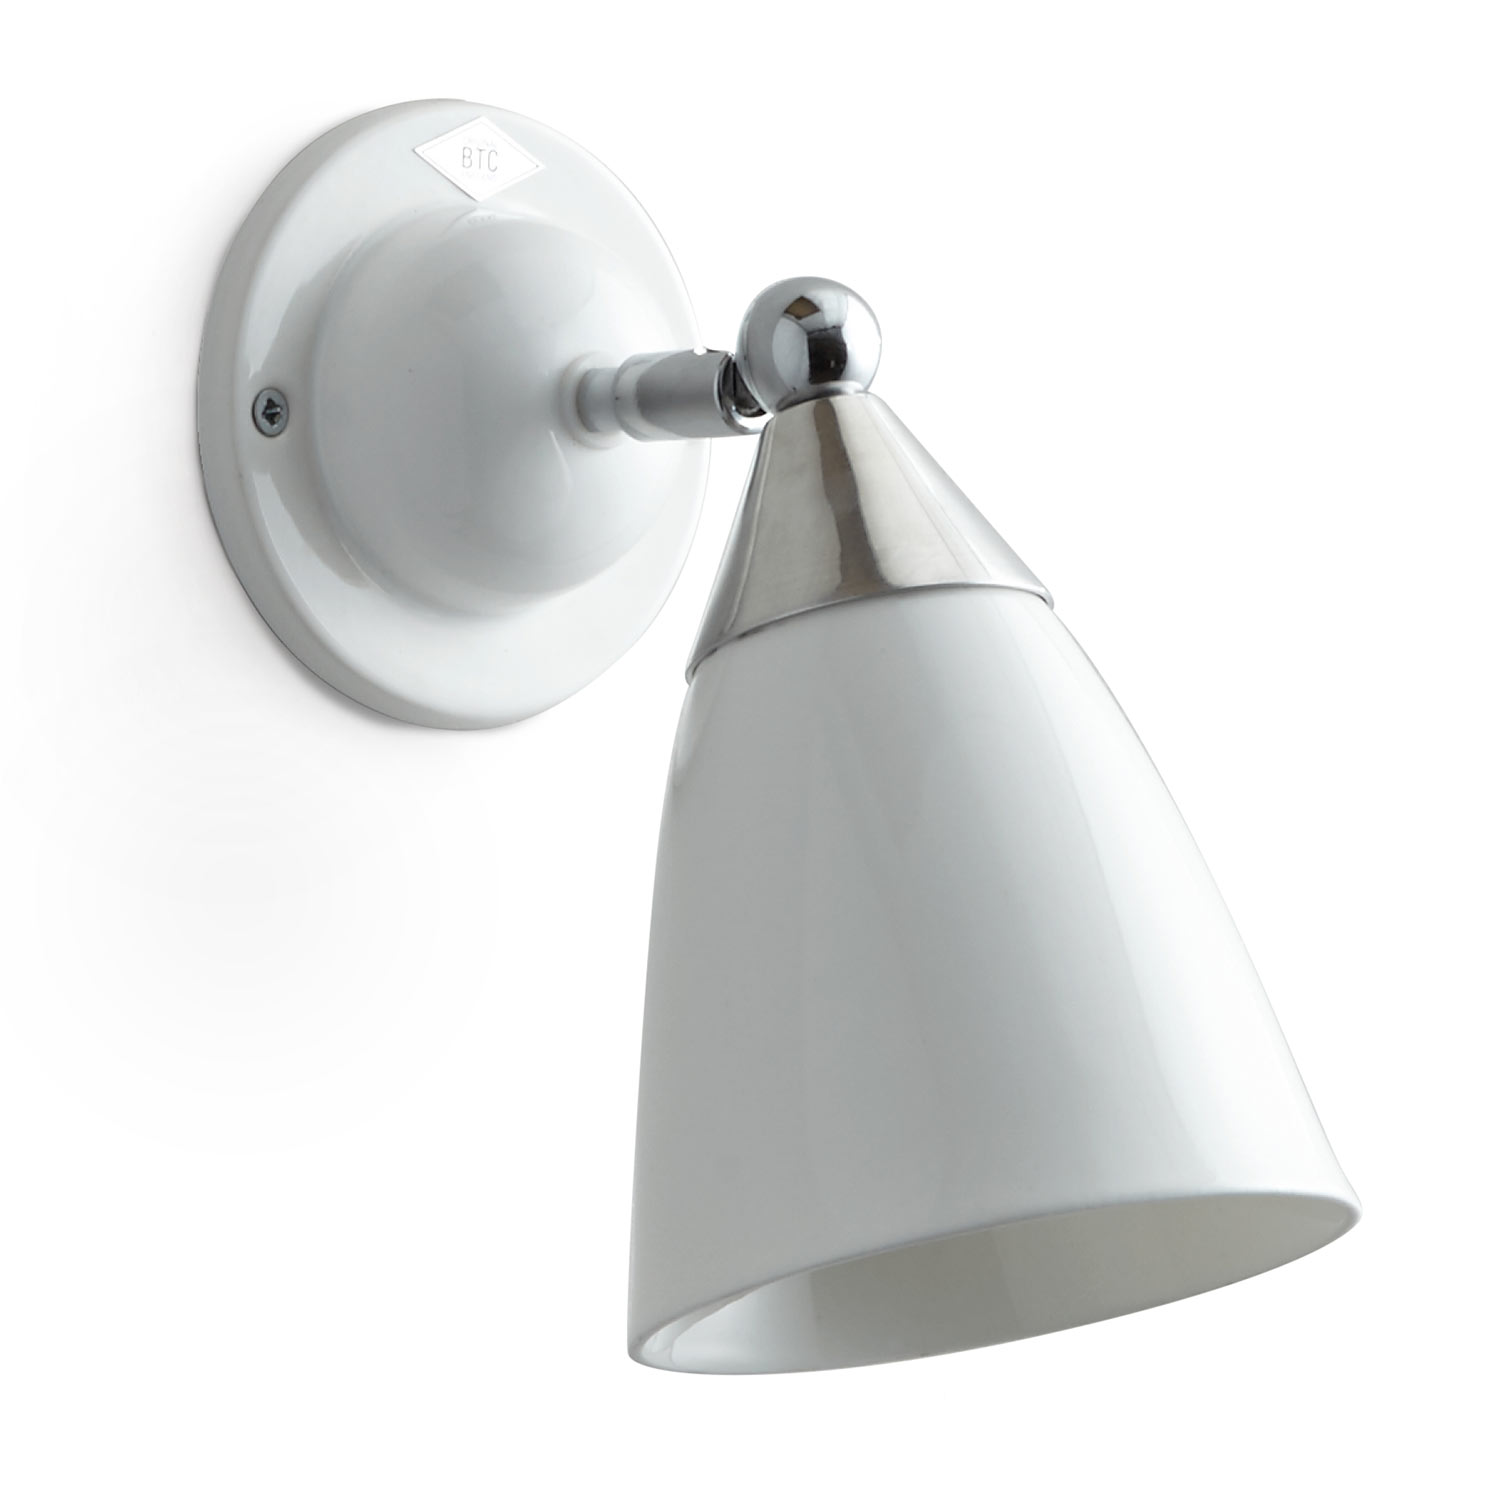 Verstellbare Art Déco-Wandlampe mit Porzellan-Schirm: Kleine Porzellan-Wandlampe „MANN“ von BTC,  hier die Version ohne Schalter